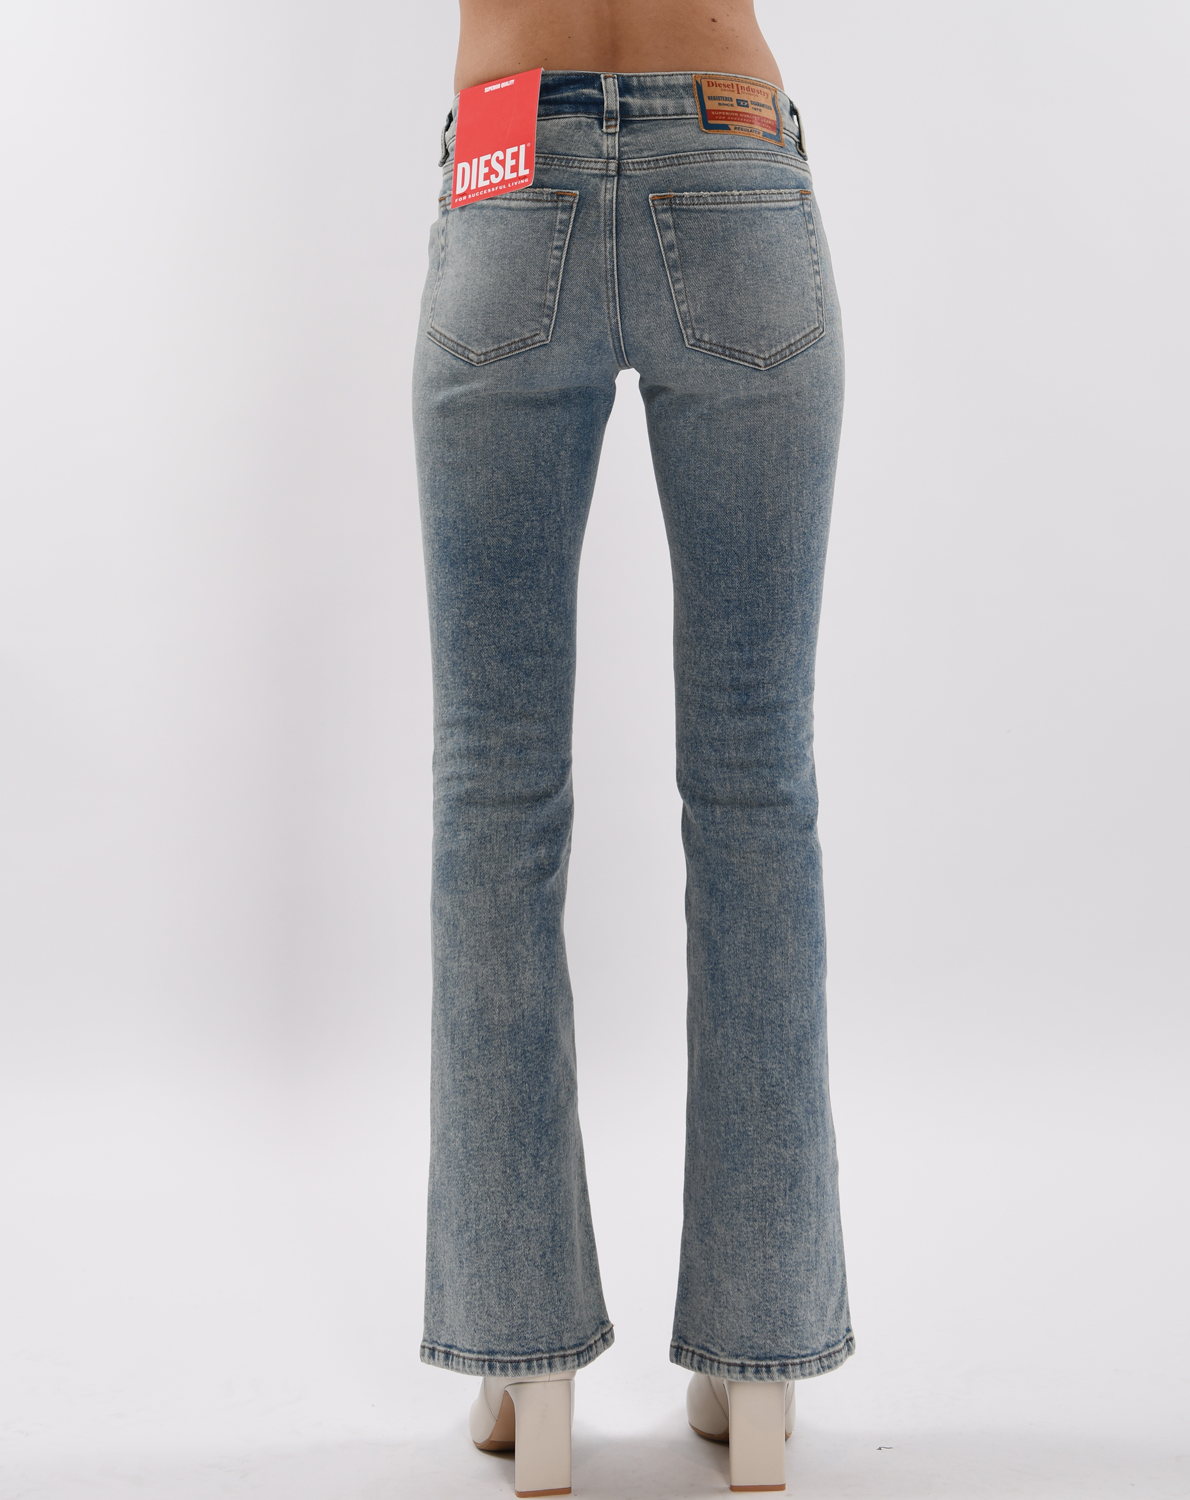 Diesel Jeans A03616 09E86 online kopen bij Moda. 1969 D-Ebbey-09E86